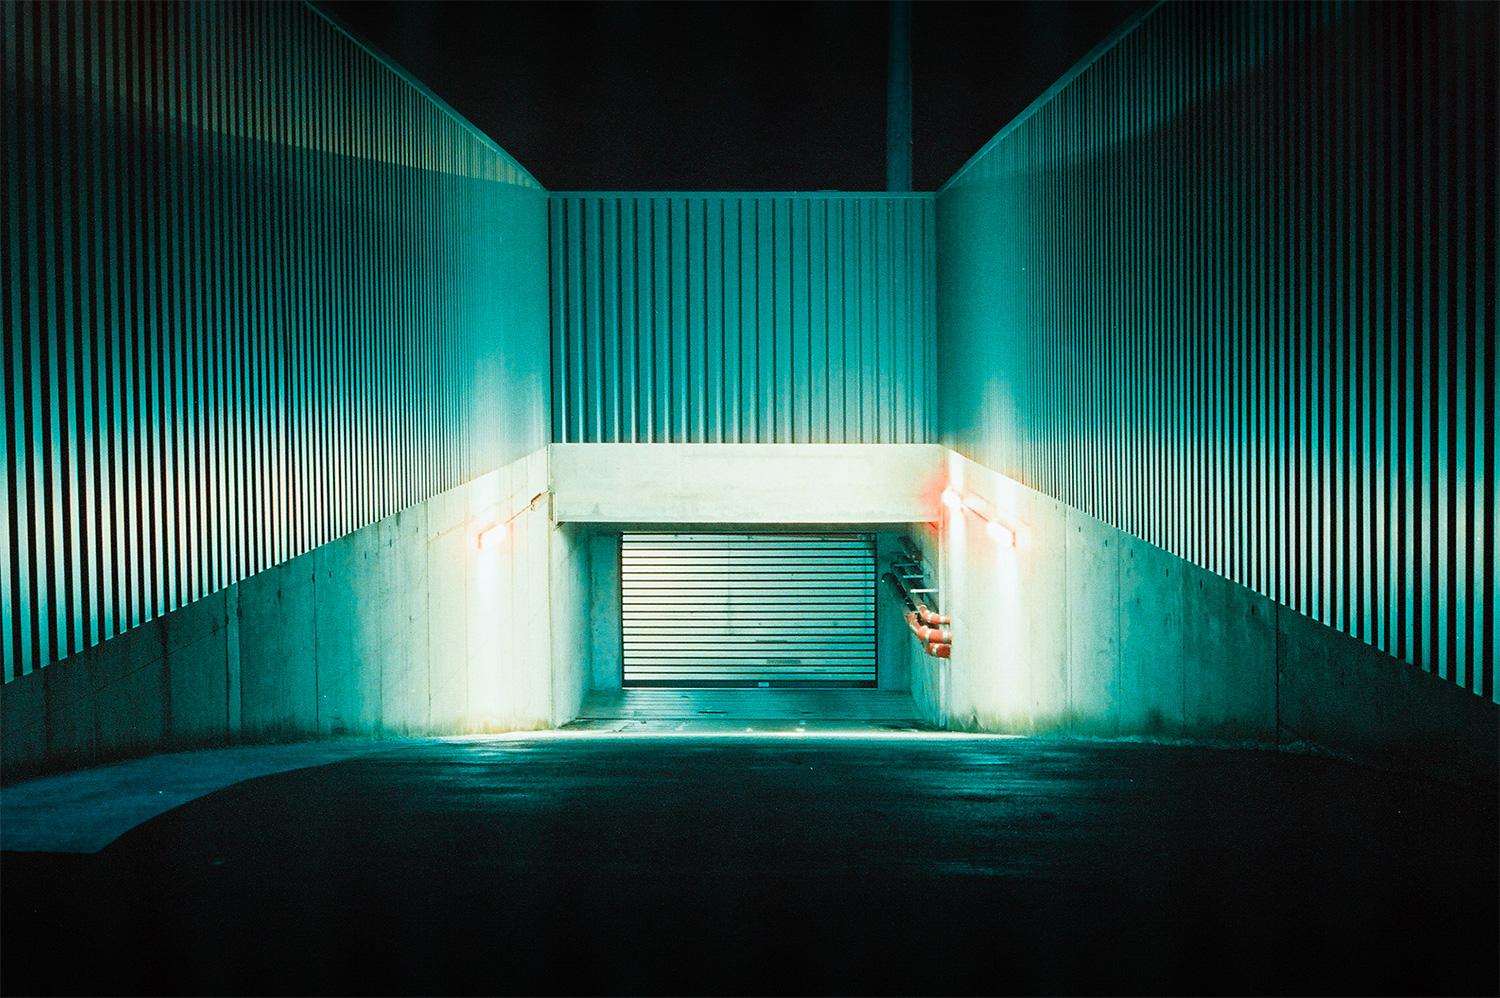 Analog photo of a garage entrance at night.